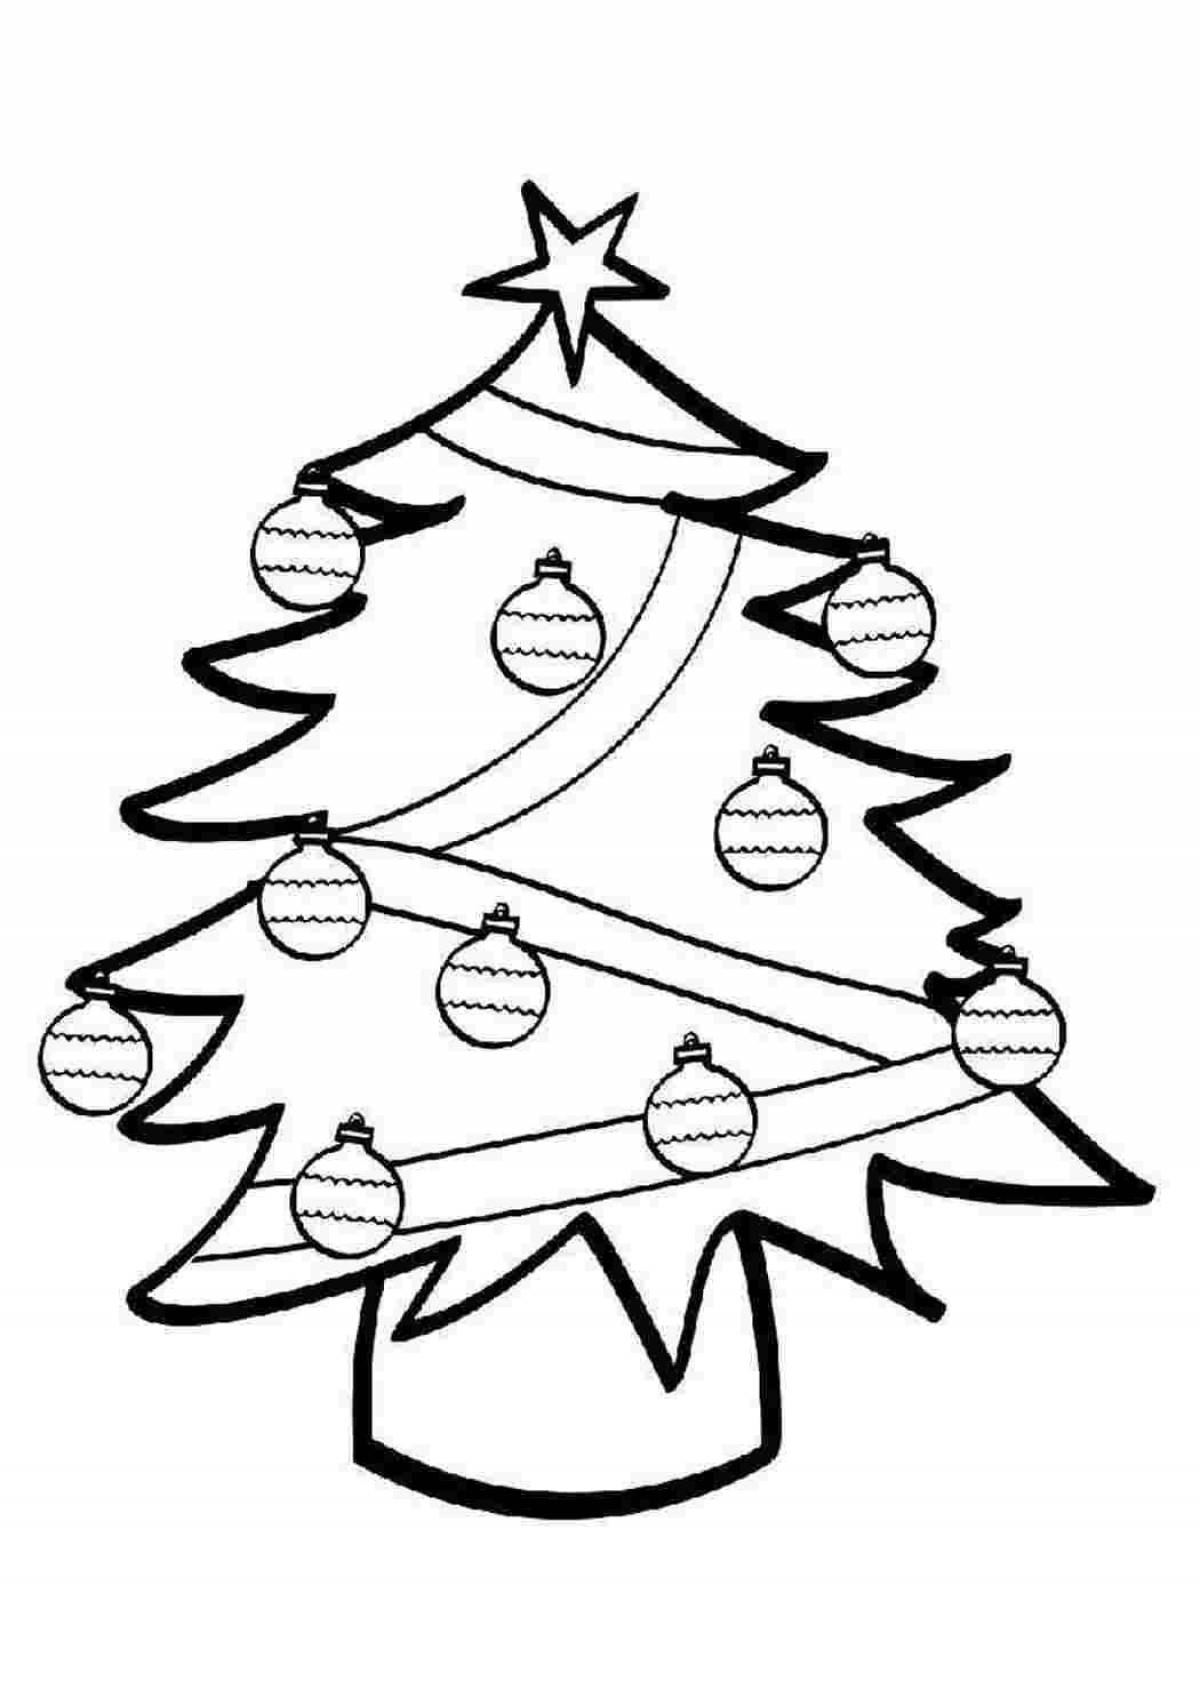 Забавная раскраска рождественская елка по номерам